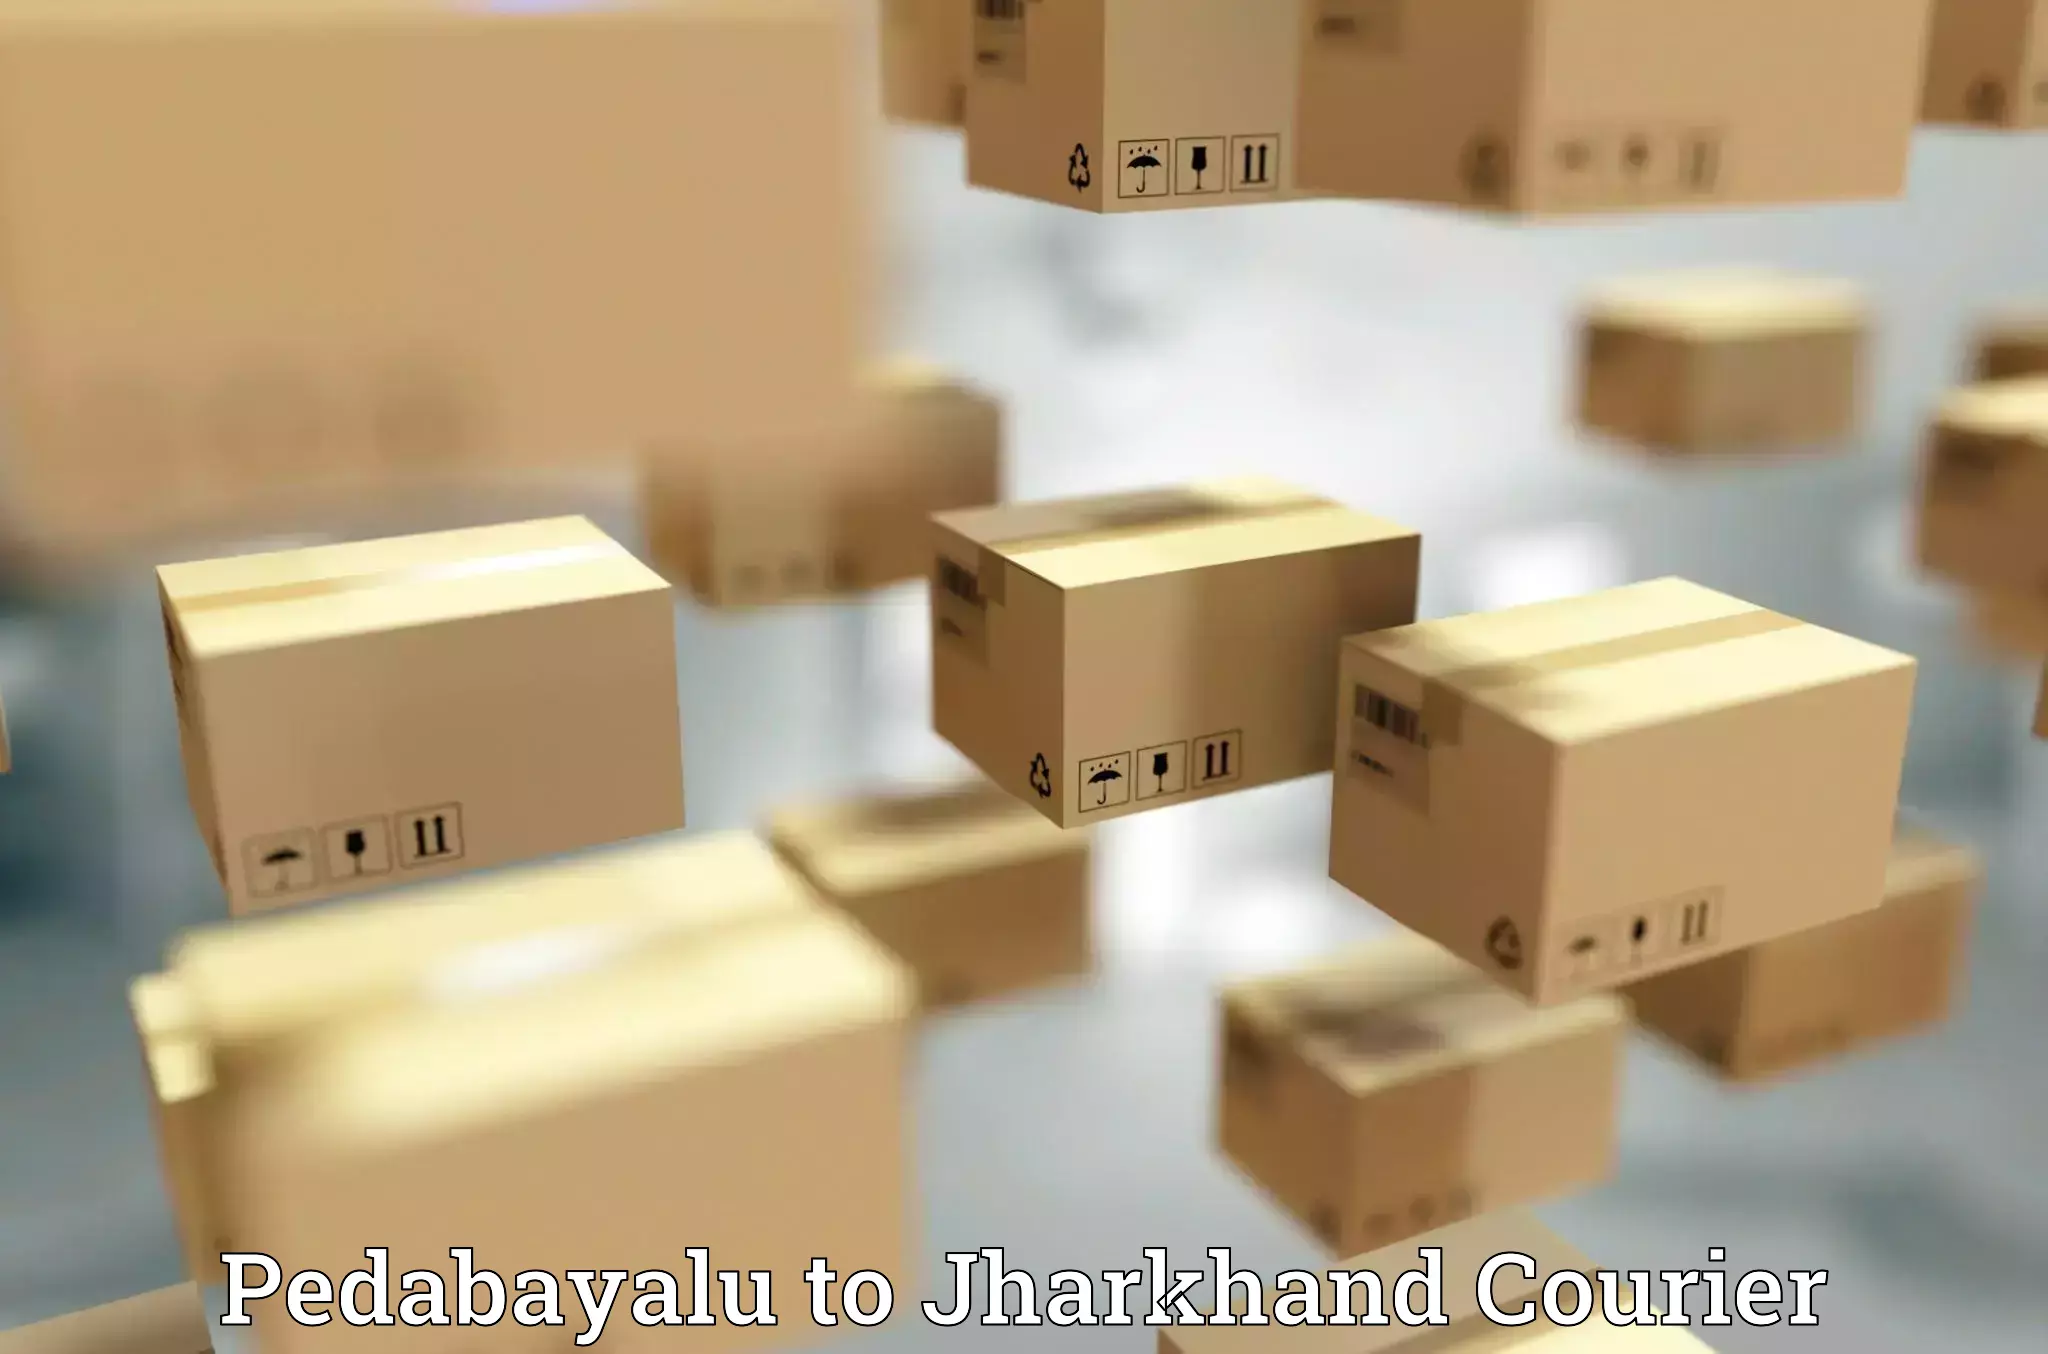 Efficient parcel delivery Pedabayalu to Hazaribagh